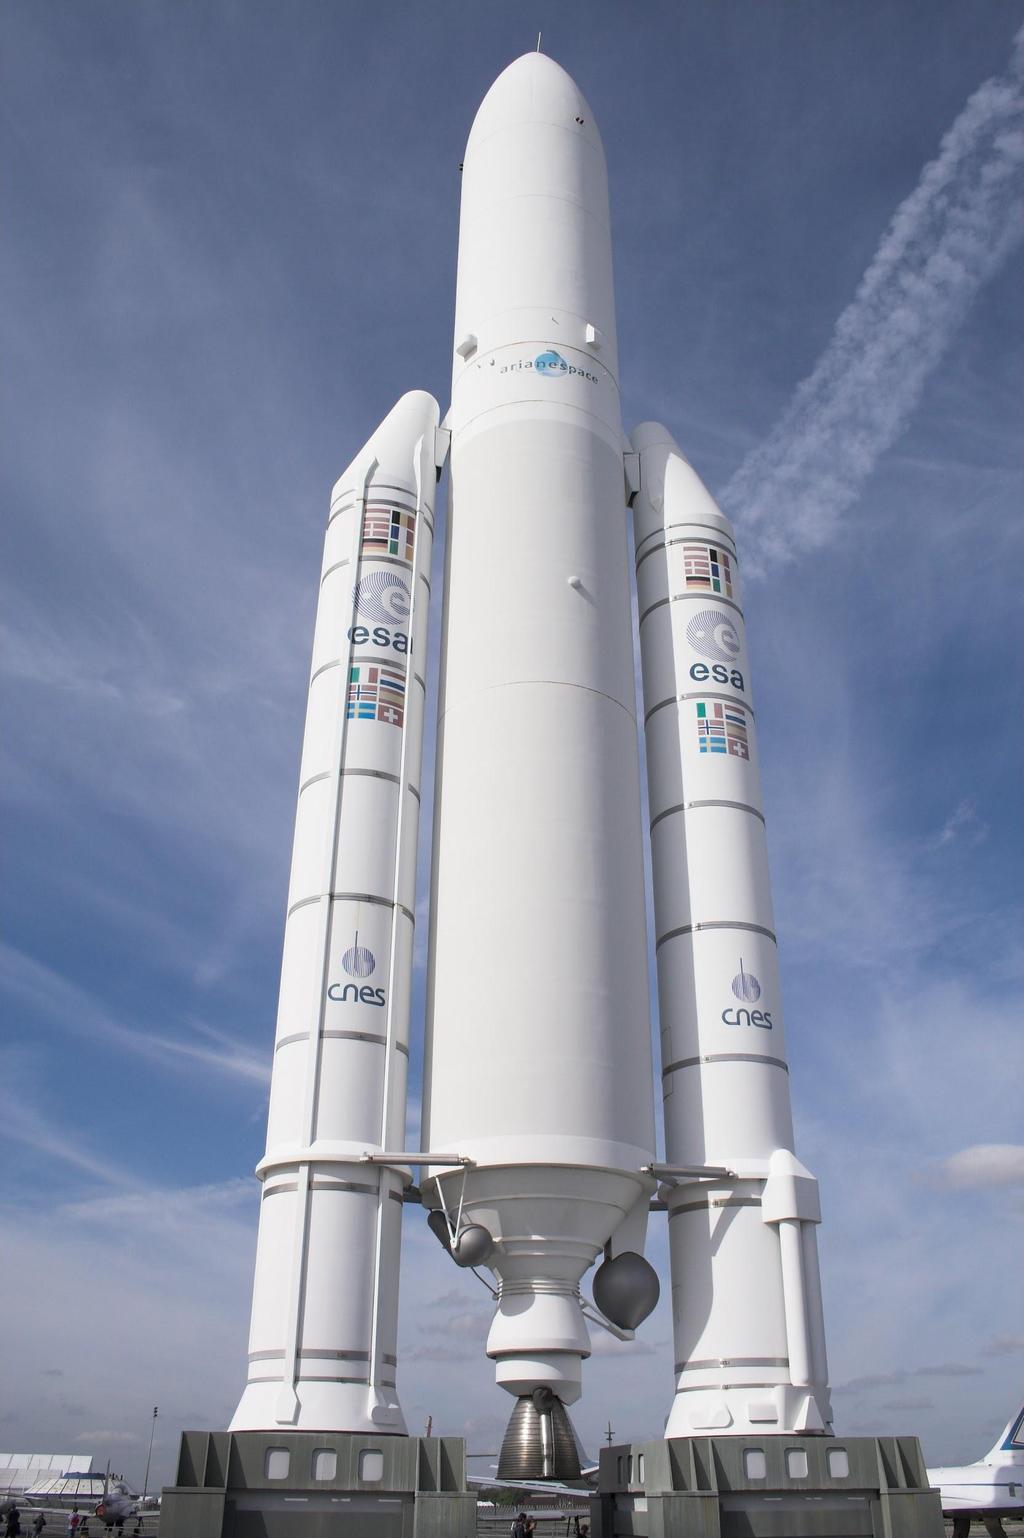 Rymdraketer och satelliter Ariane 5 den är 59 meter. Den väger ca 8 ton. Ariane 5 har 2 krutrakter dom gör så man åker snabbare. Längst ner sitter raketmotorn. Längst upp sitter satelliten.